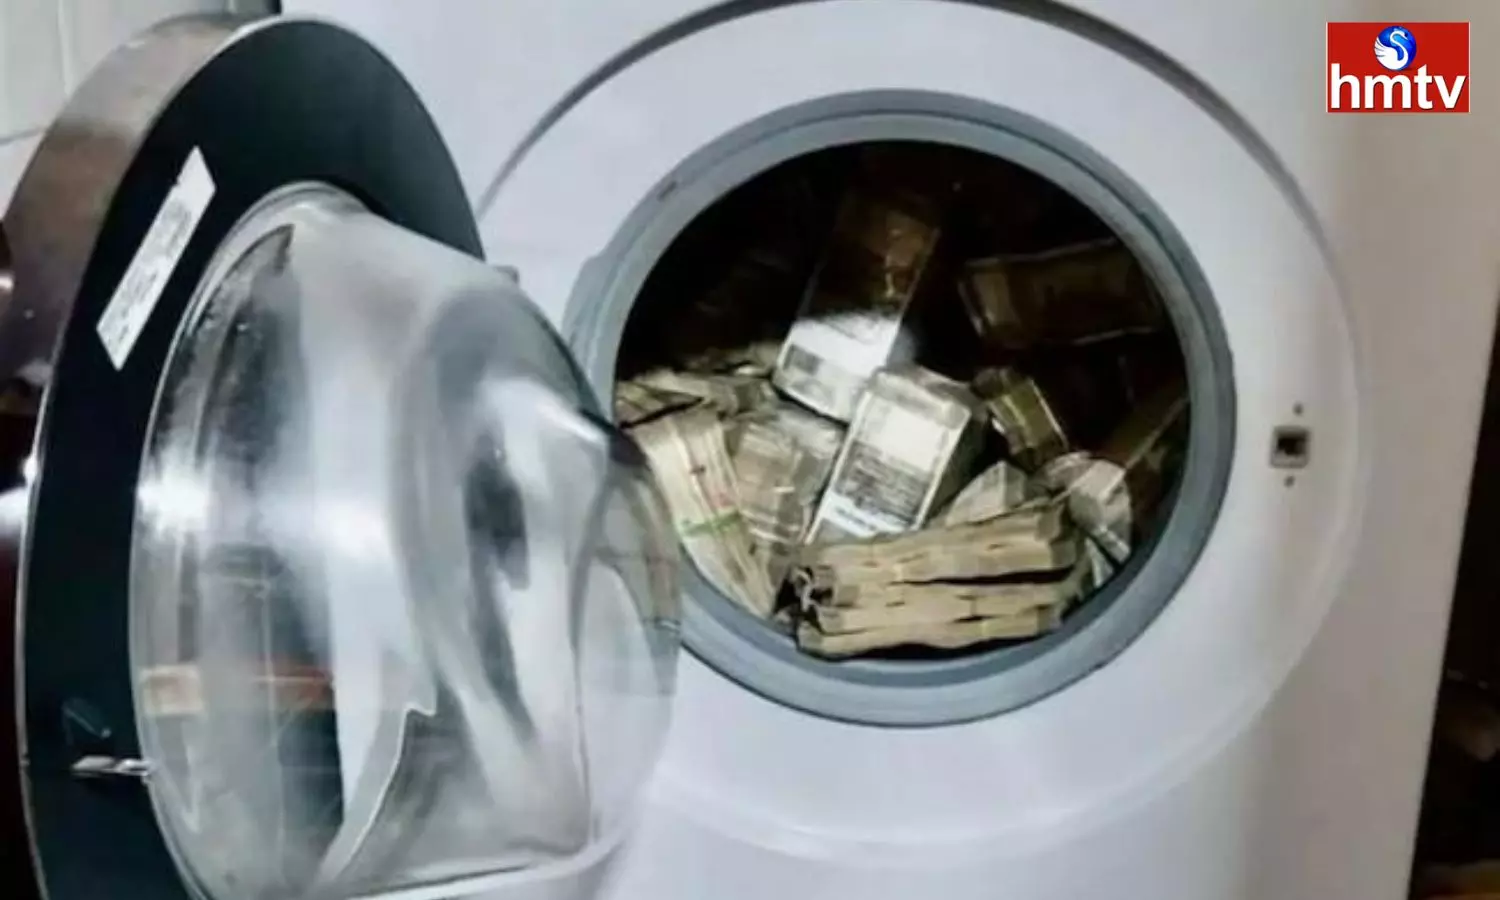 ED Found huge cash in Washing Machine